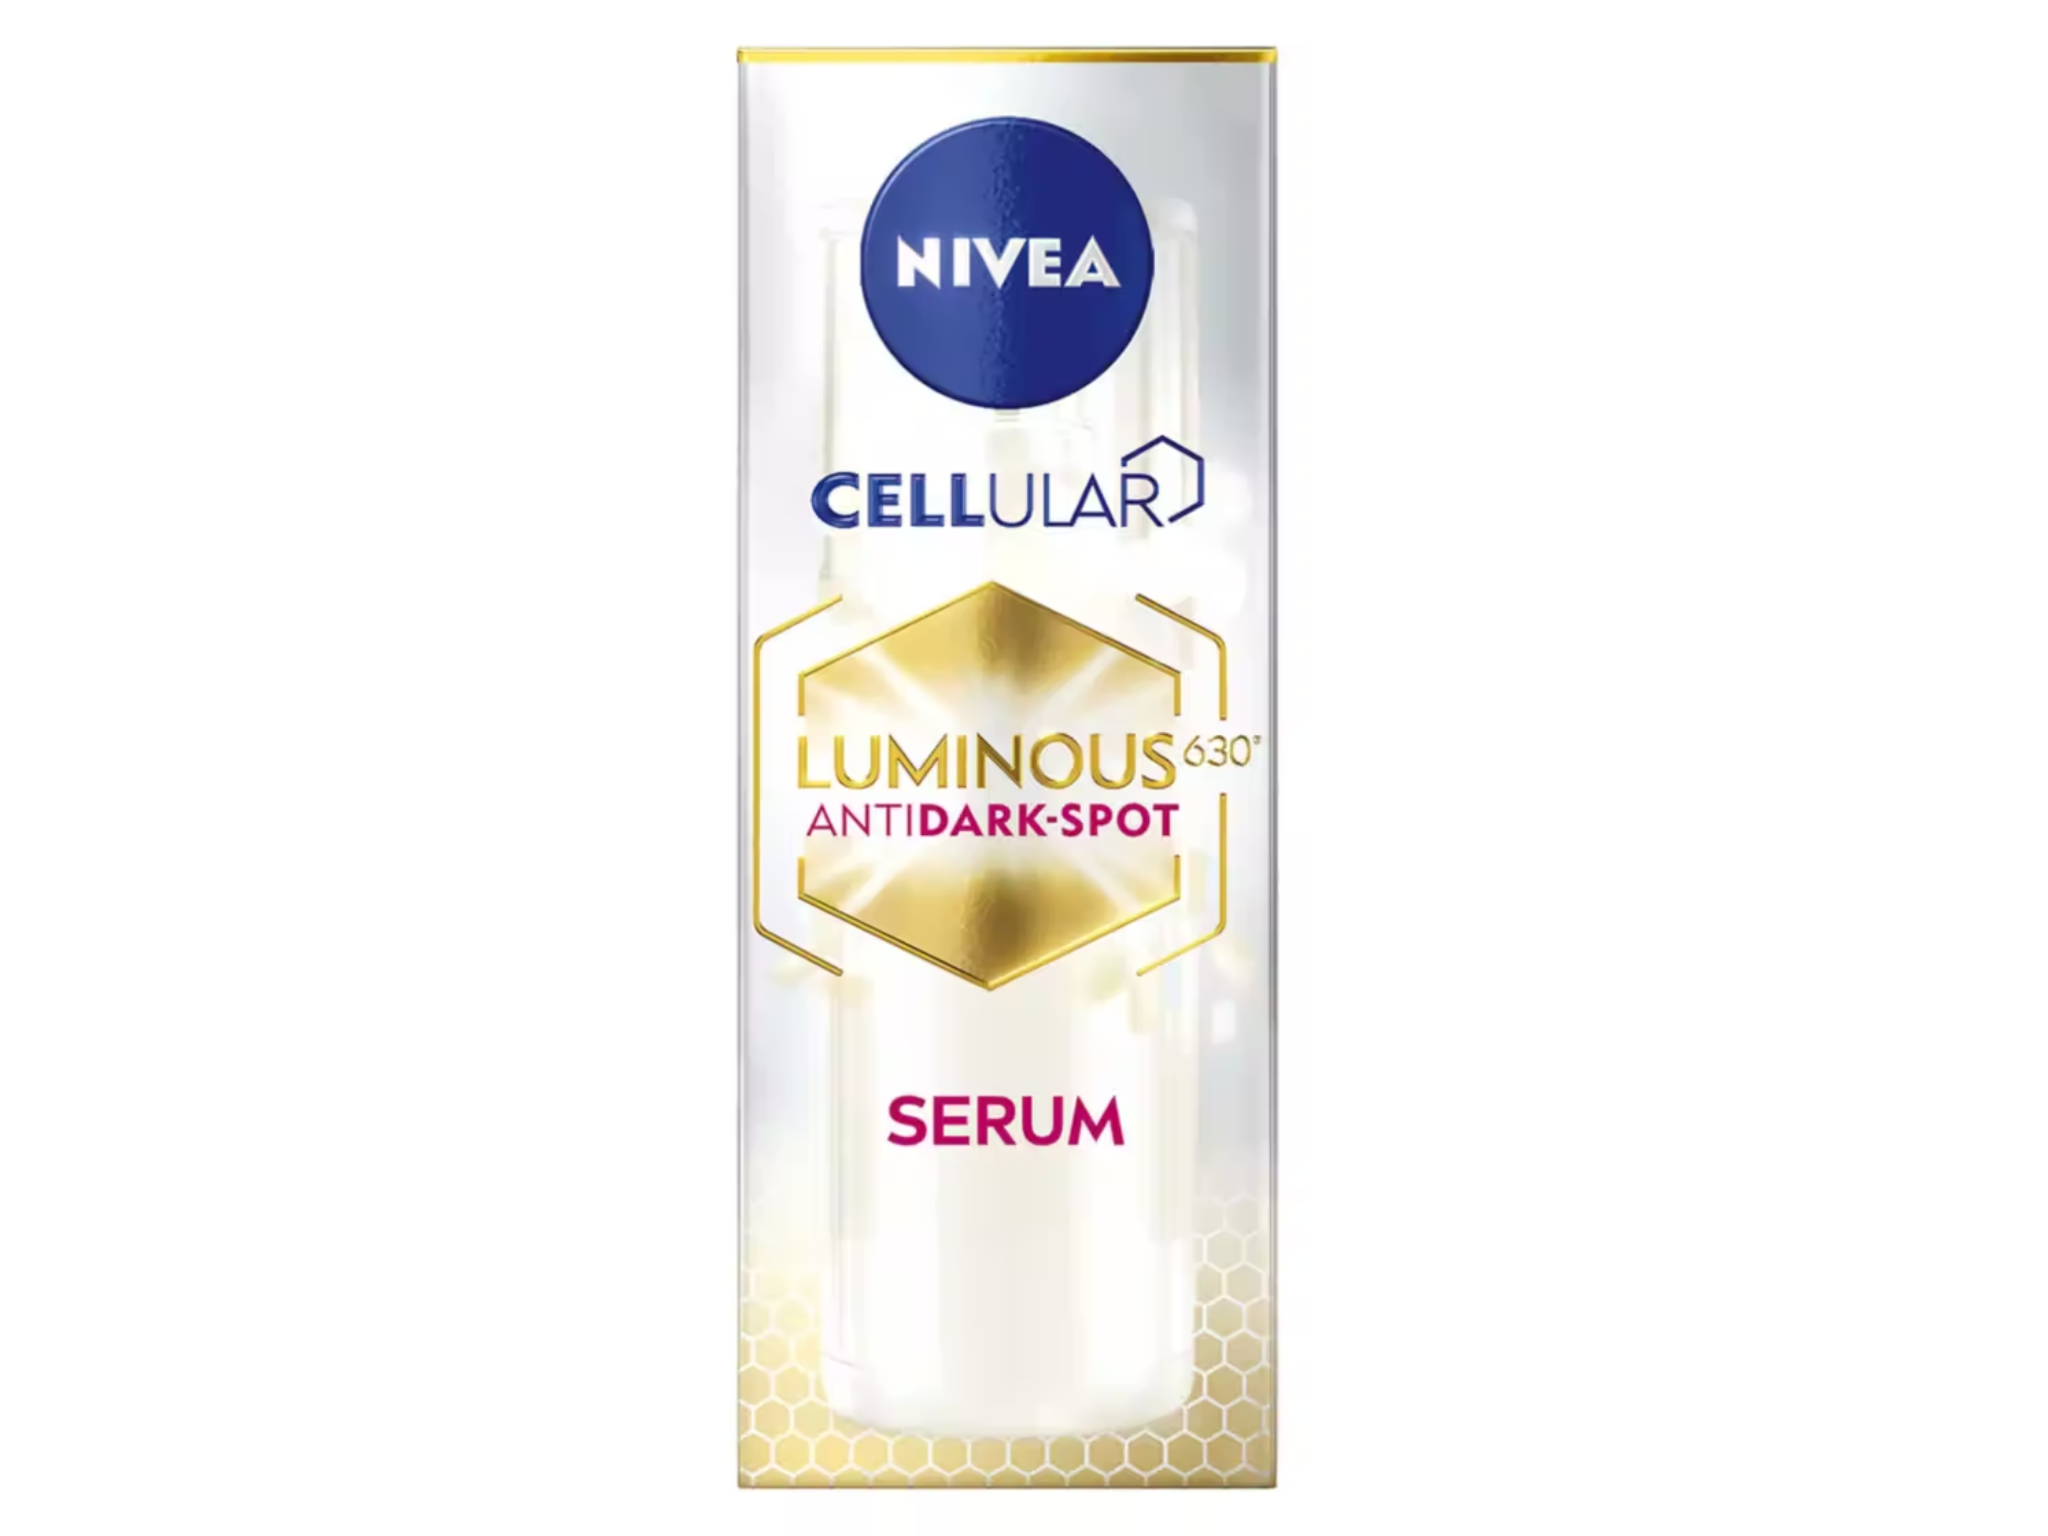 NIVEA-cellular-serum-indybest (1).png